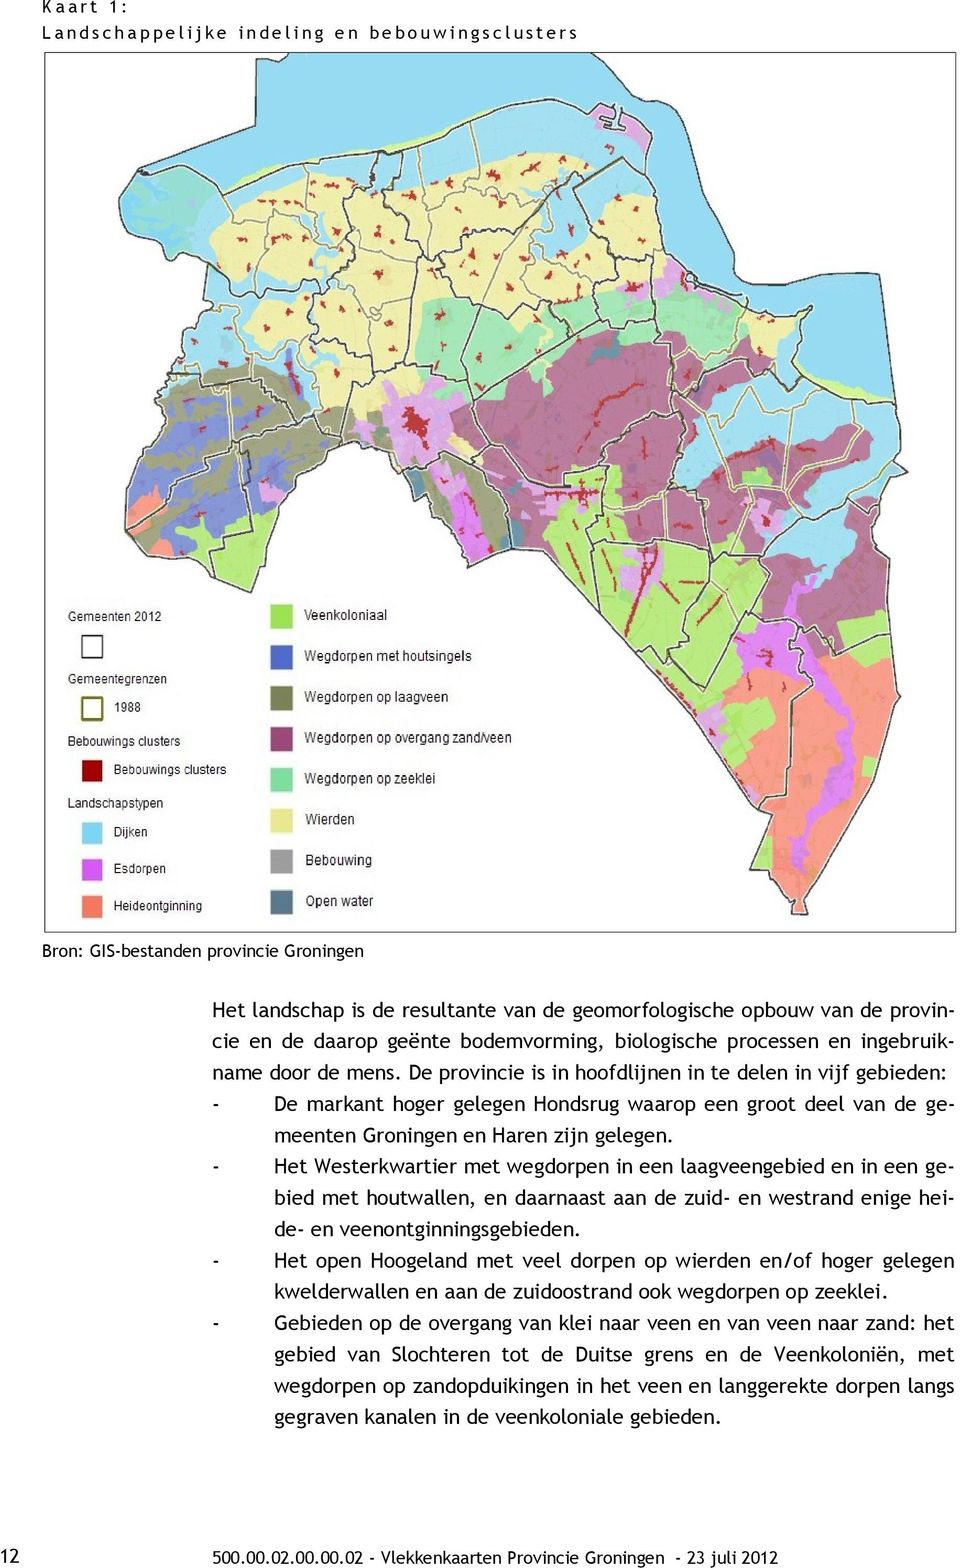 De provincie is in hoofdlijnen in te delen in vijf gebieden: - De markant hoger gelegen Hondsrug waarop een groot deel van de gemeenten Groningen en Haren zijn gelegen.